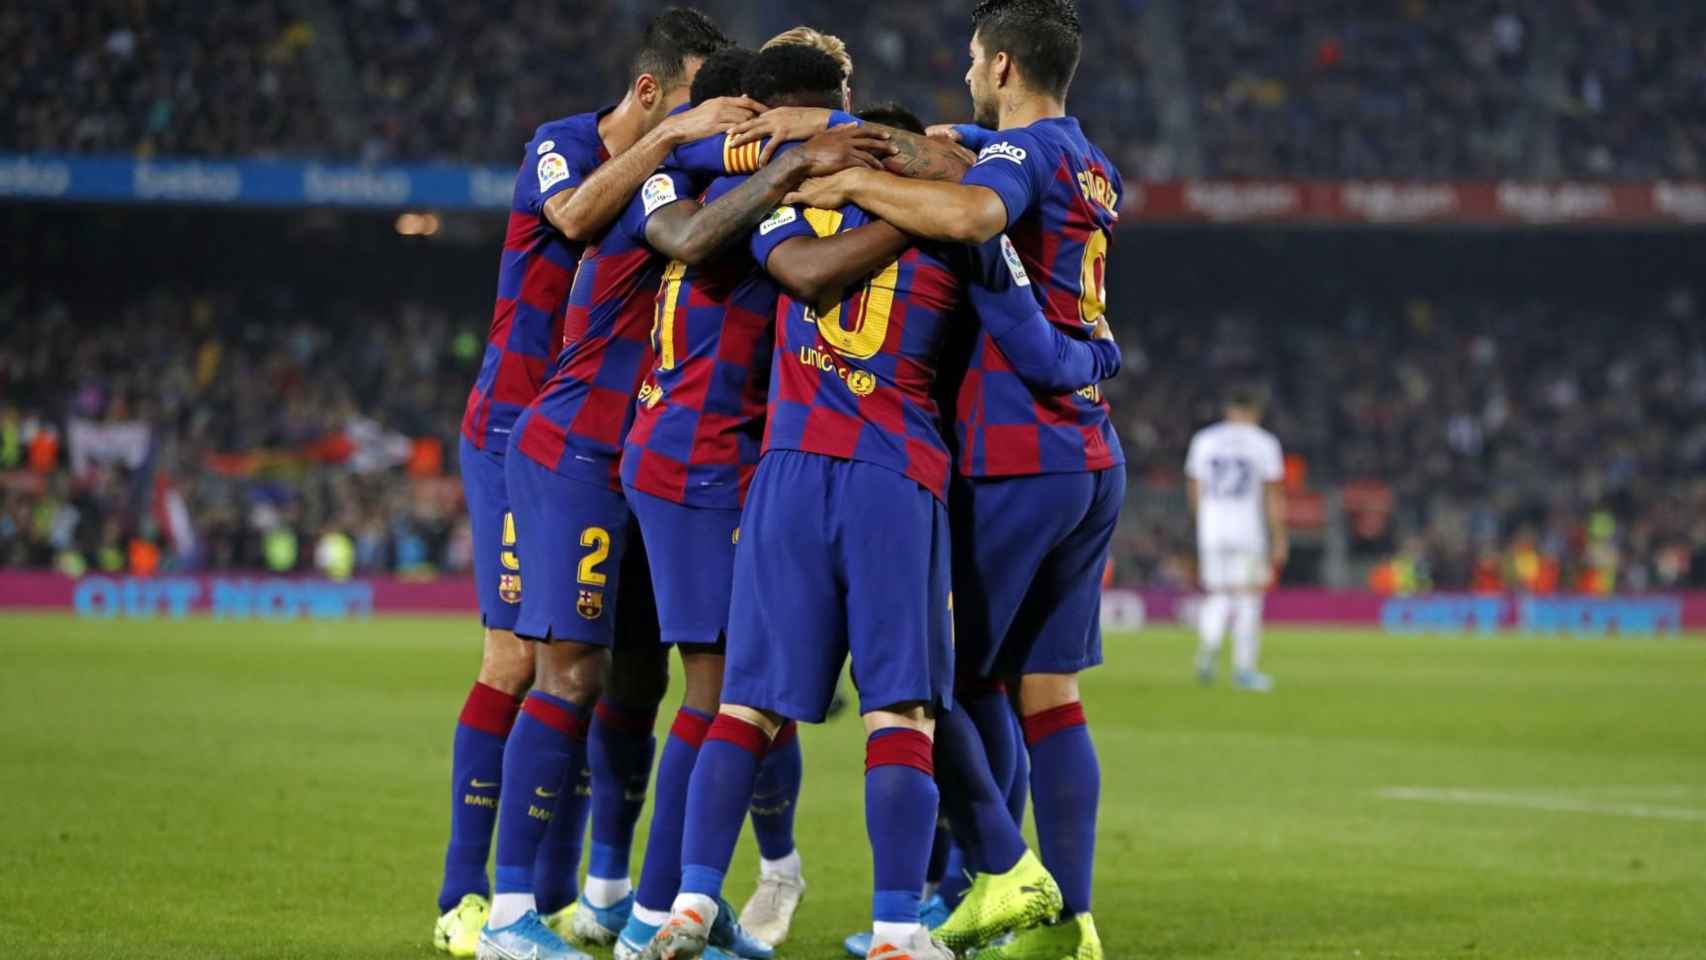 Los jugadores del Barça celebrando uno de los goles frente al Valladolid / FC Barcelona